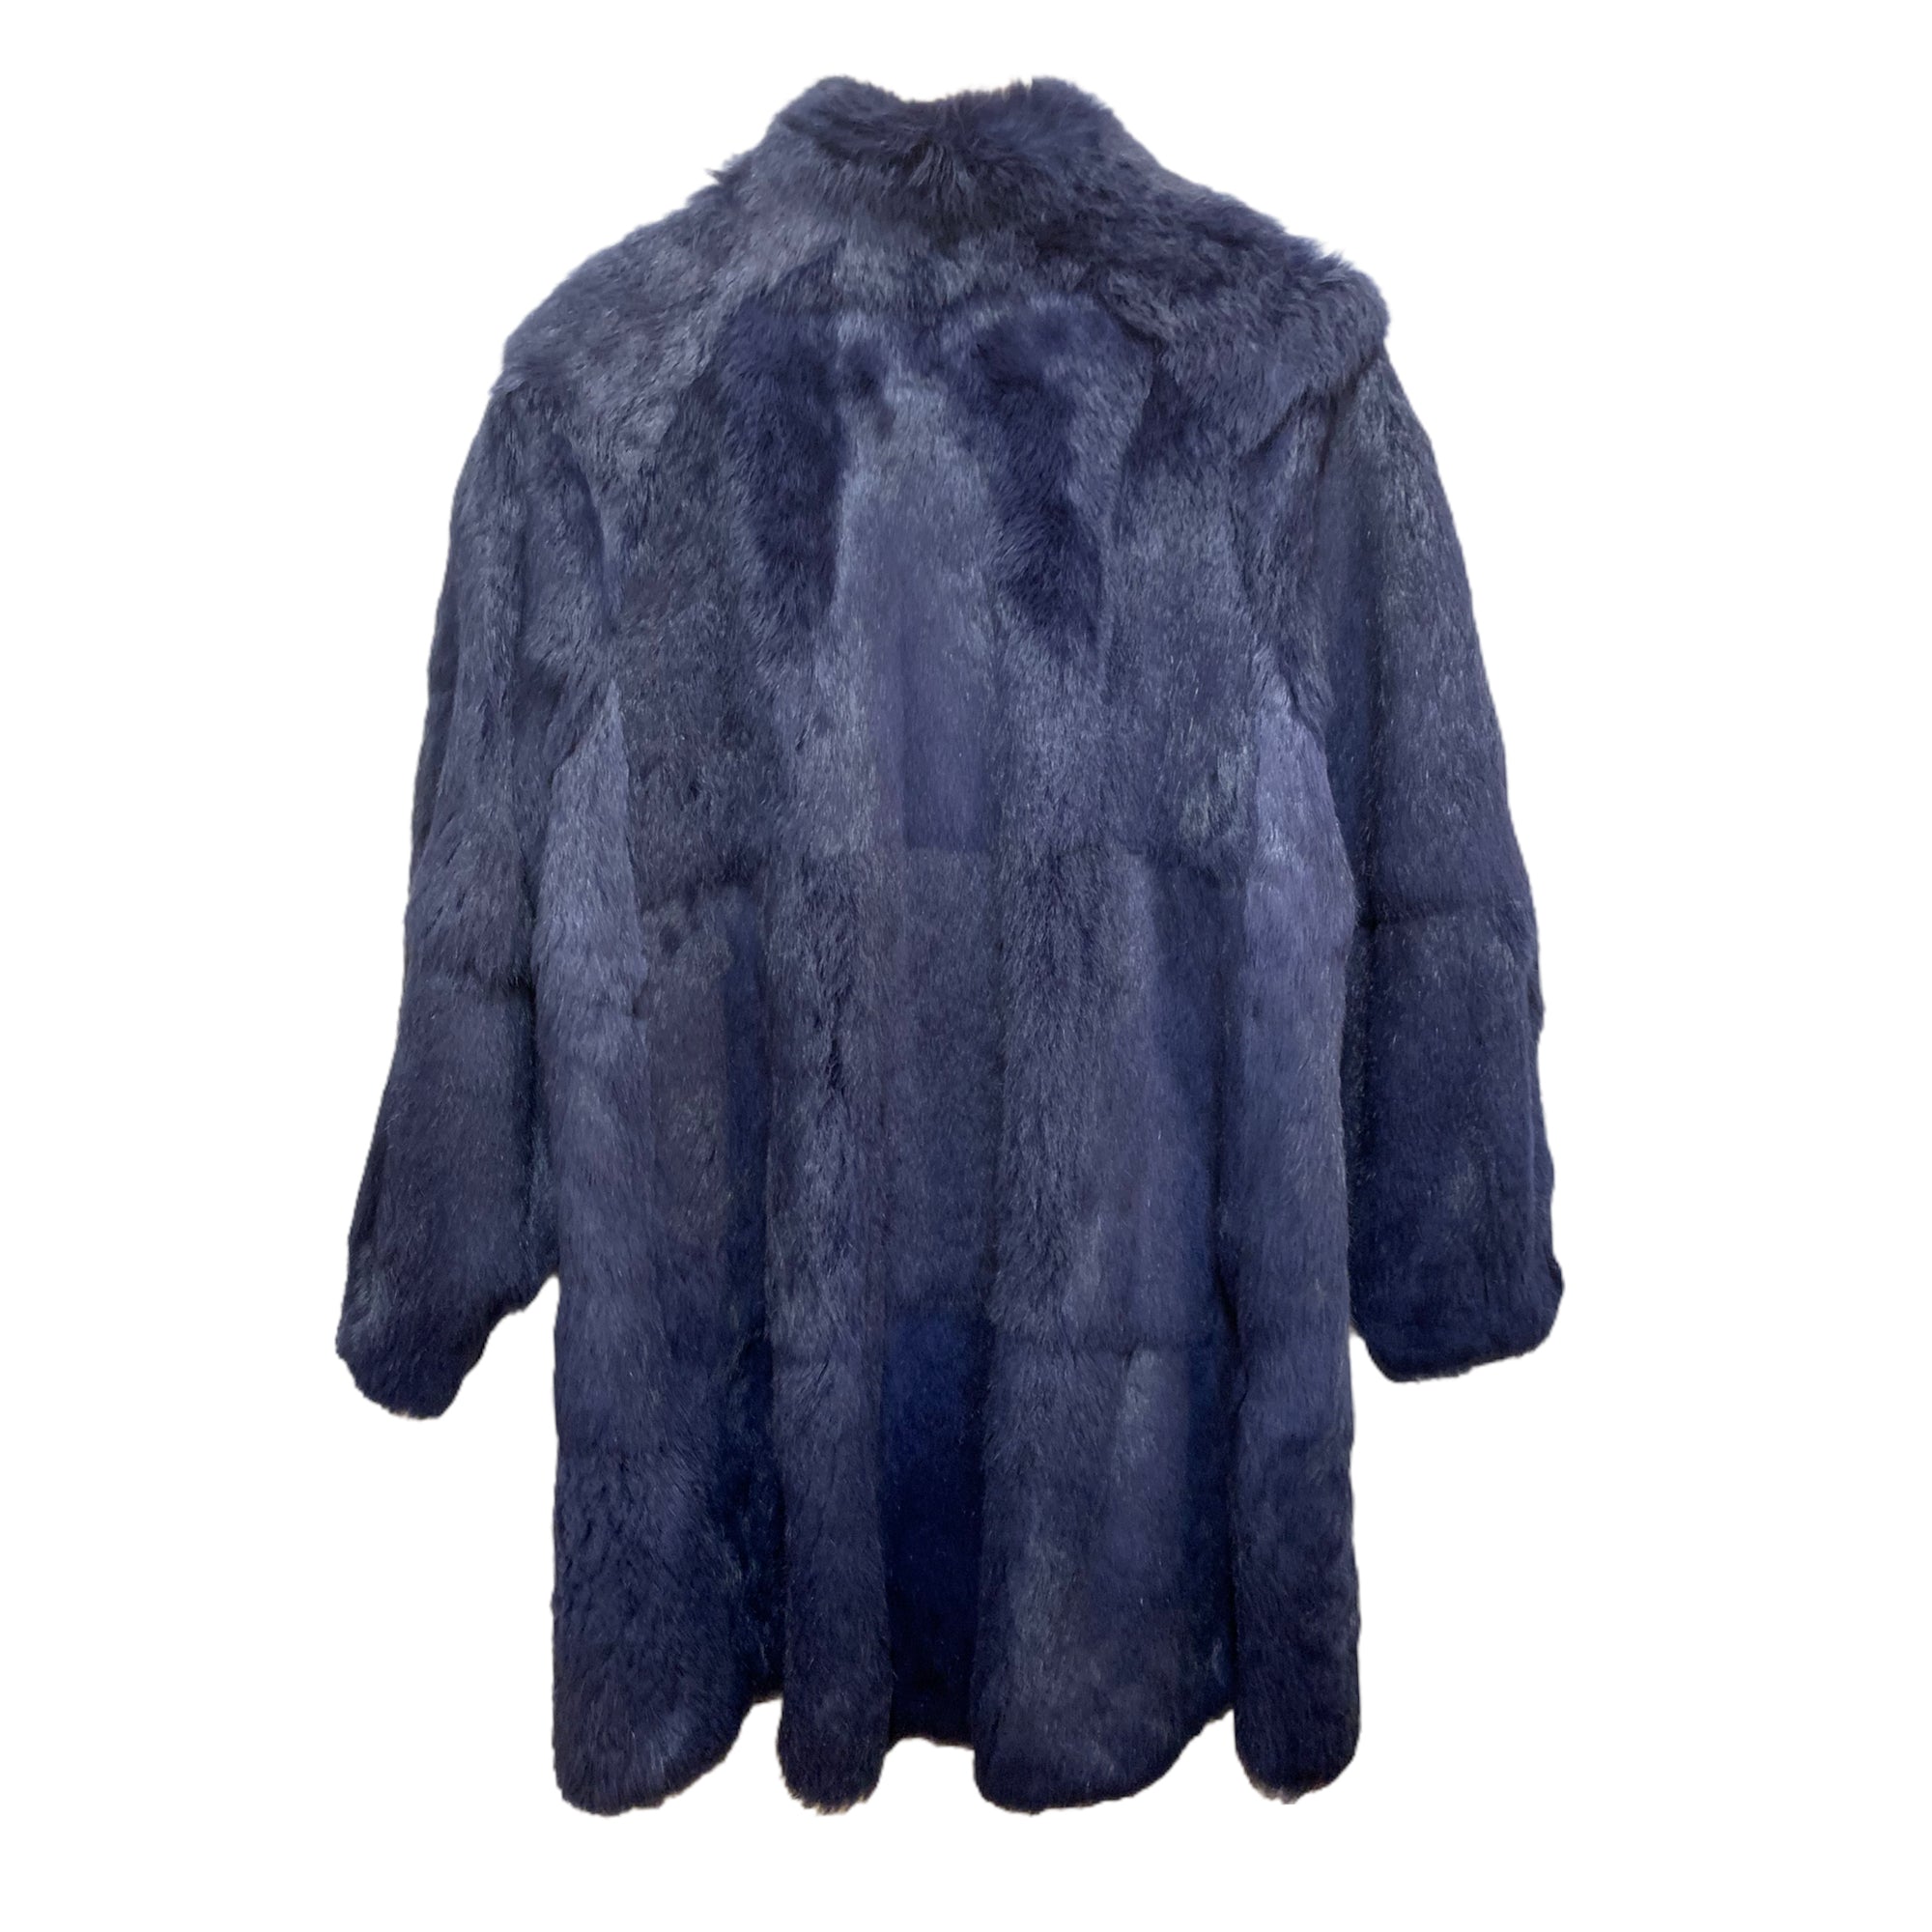 Vintage Les Copains Real Fox & Rabbit Fur Coat |Size IT42|